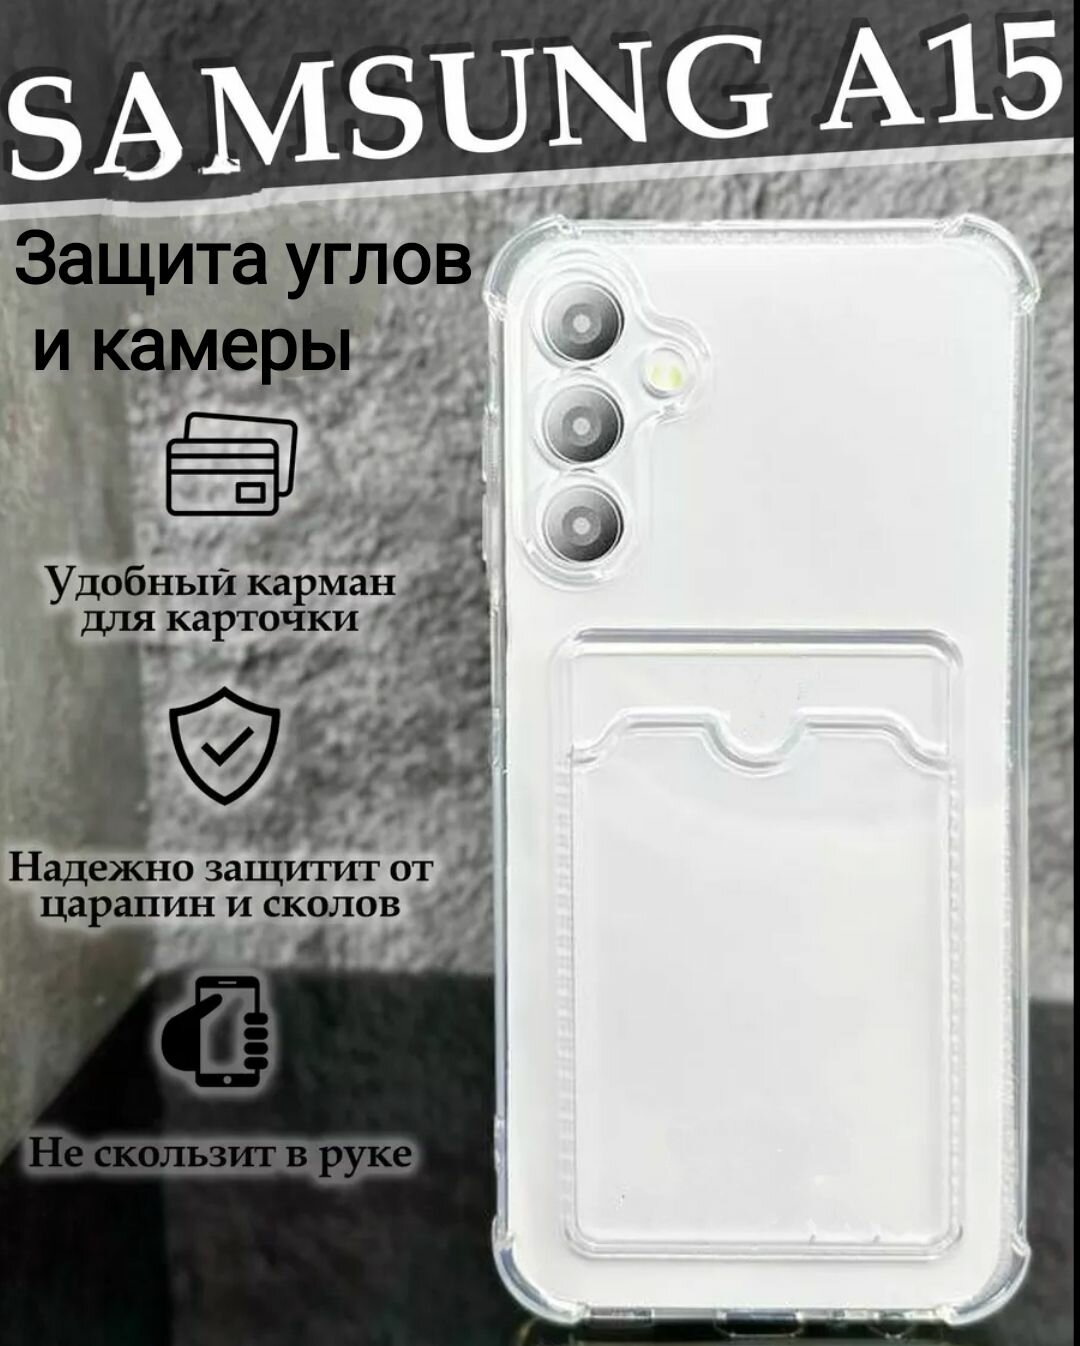 Samsung Galaxy A15 силиконовый прозрачный чехол для самсунг галакси а15 с защитной камеры и углов, бампер накладка